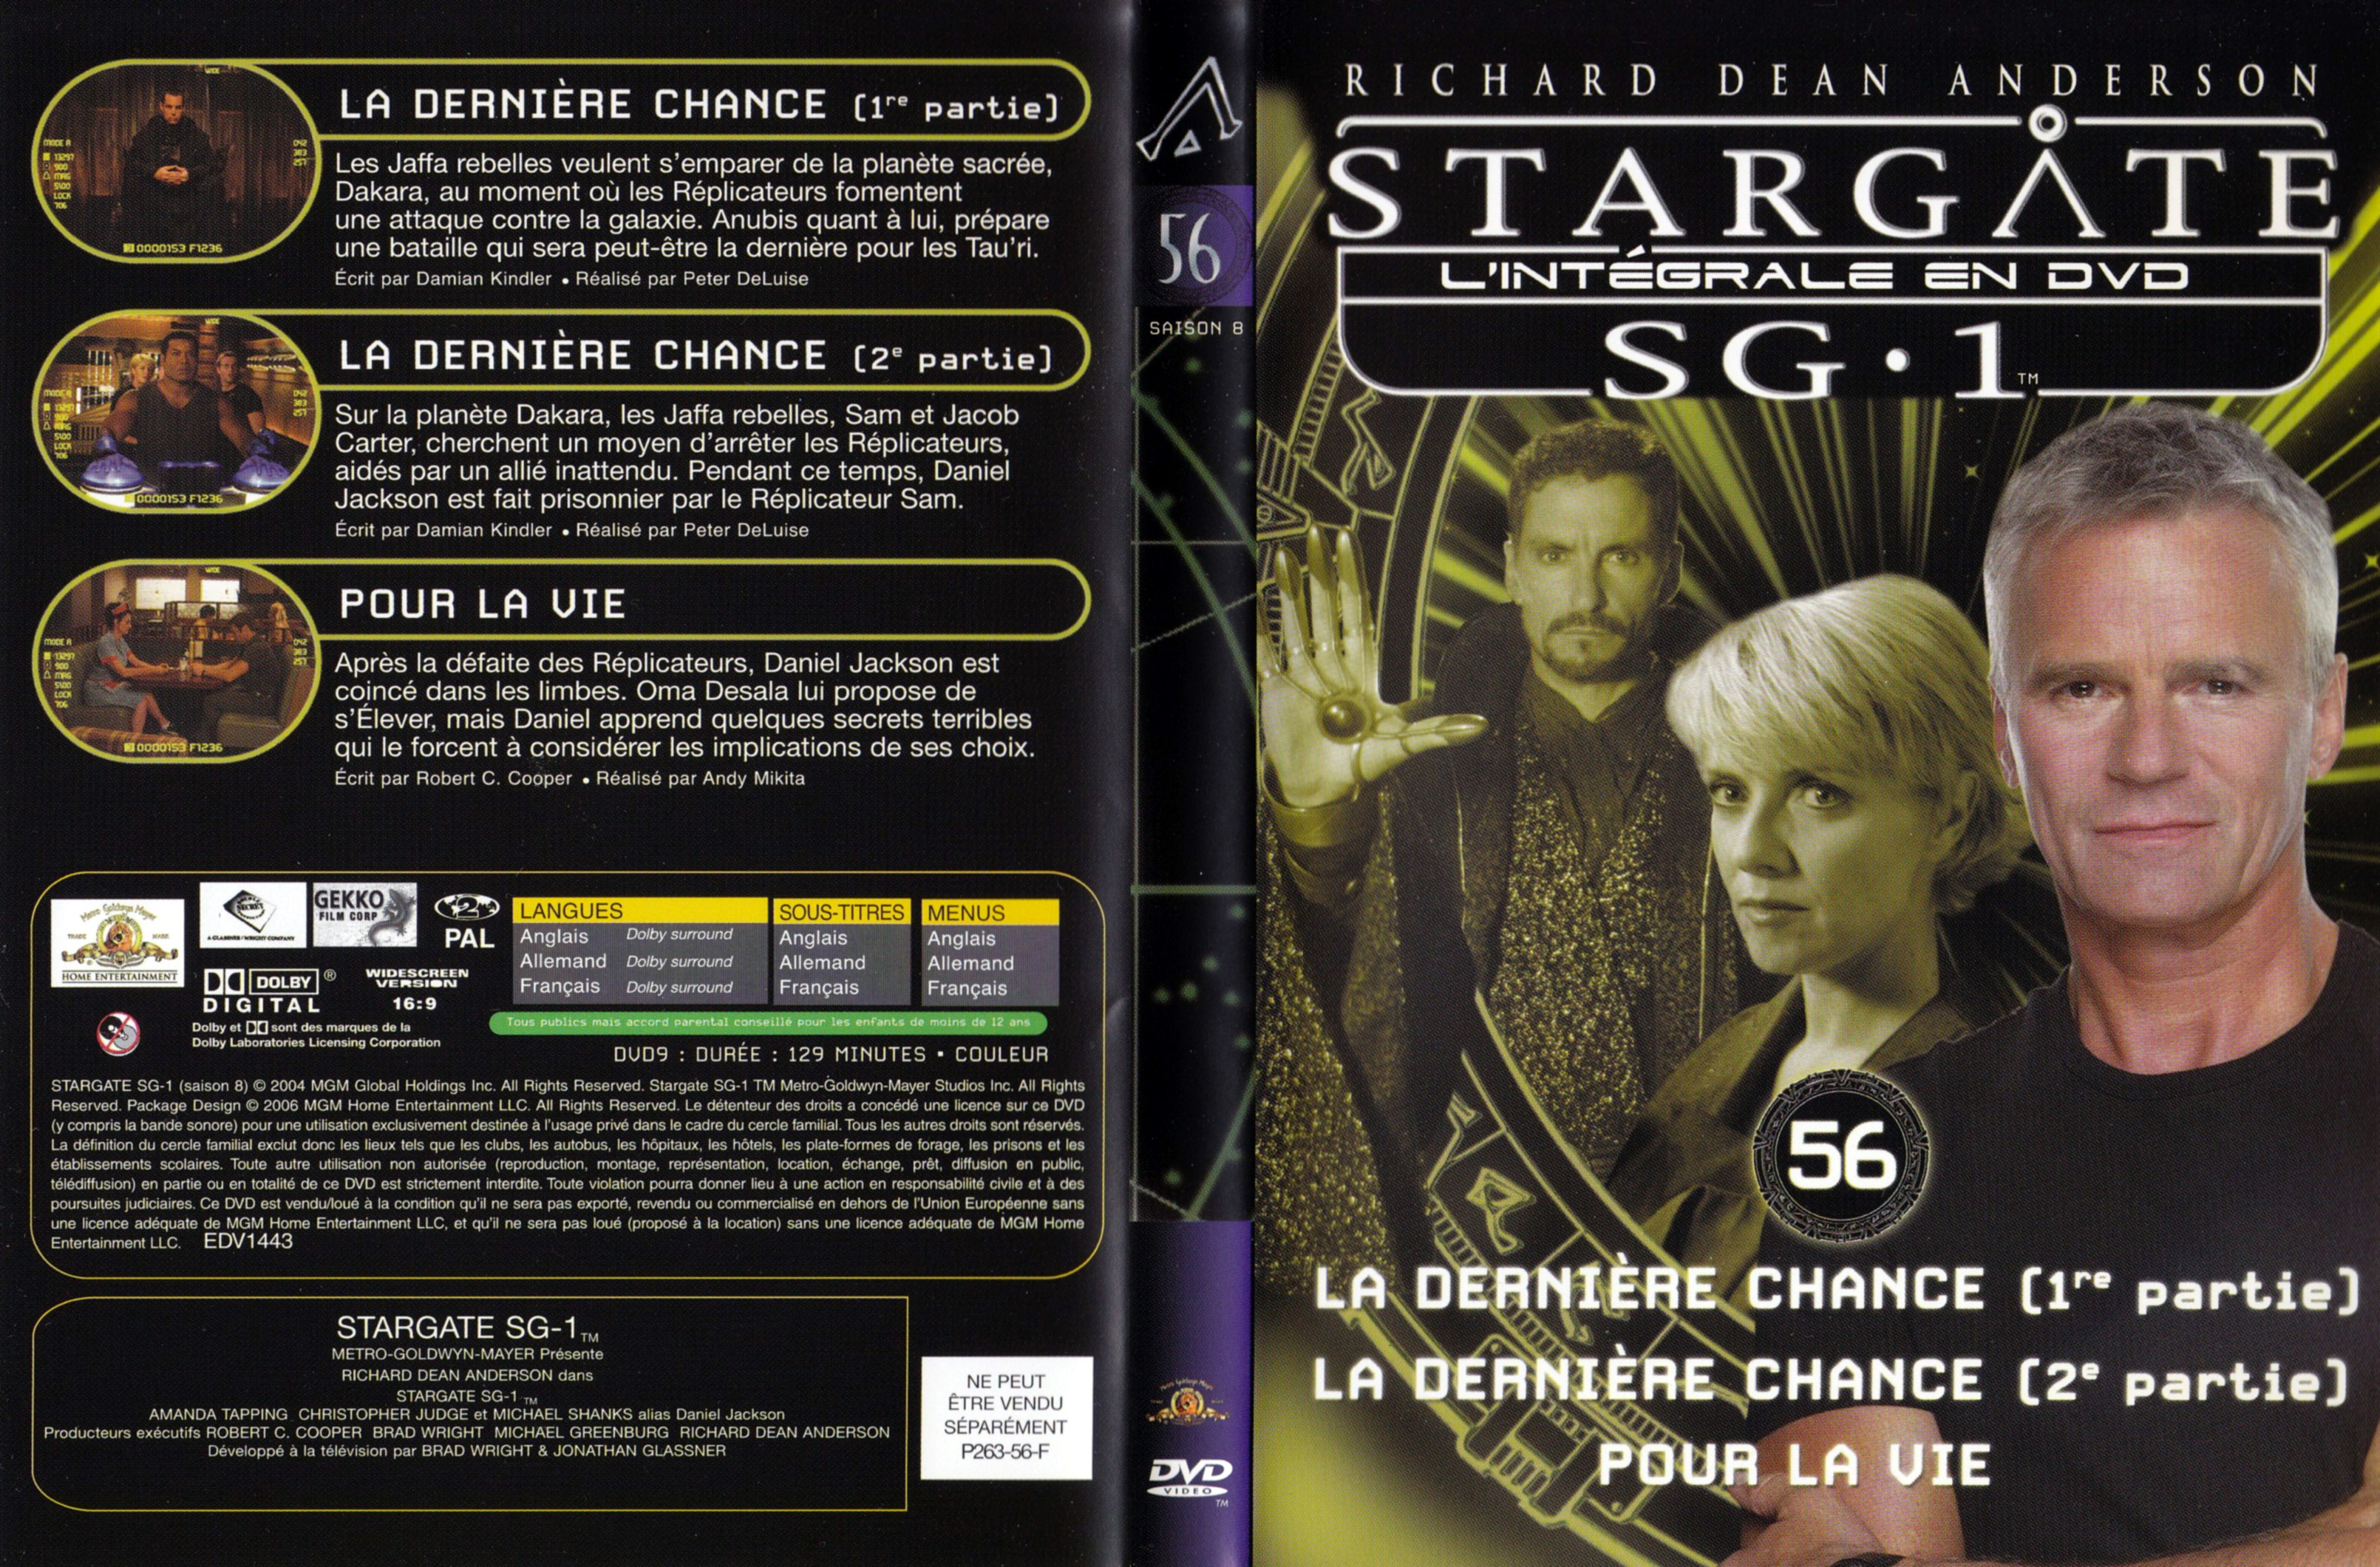 Jaquette DVD Stargate SG1 Intgrale Saison 8 vol 56